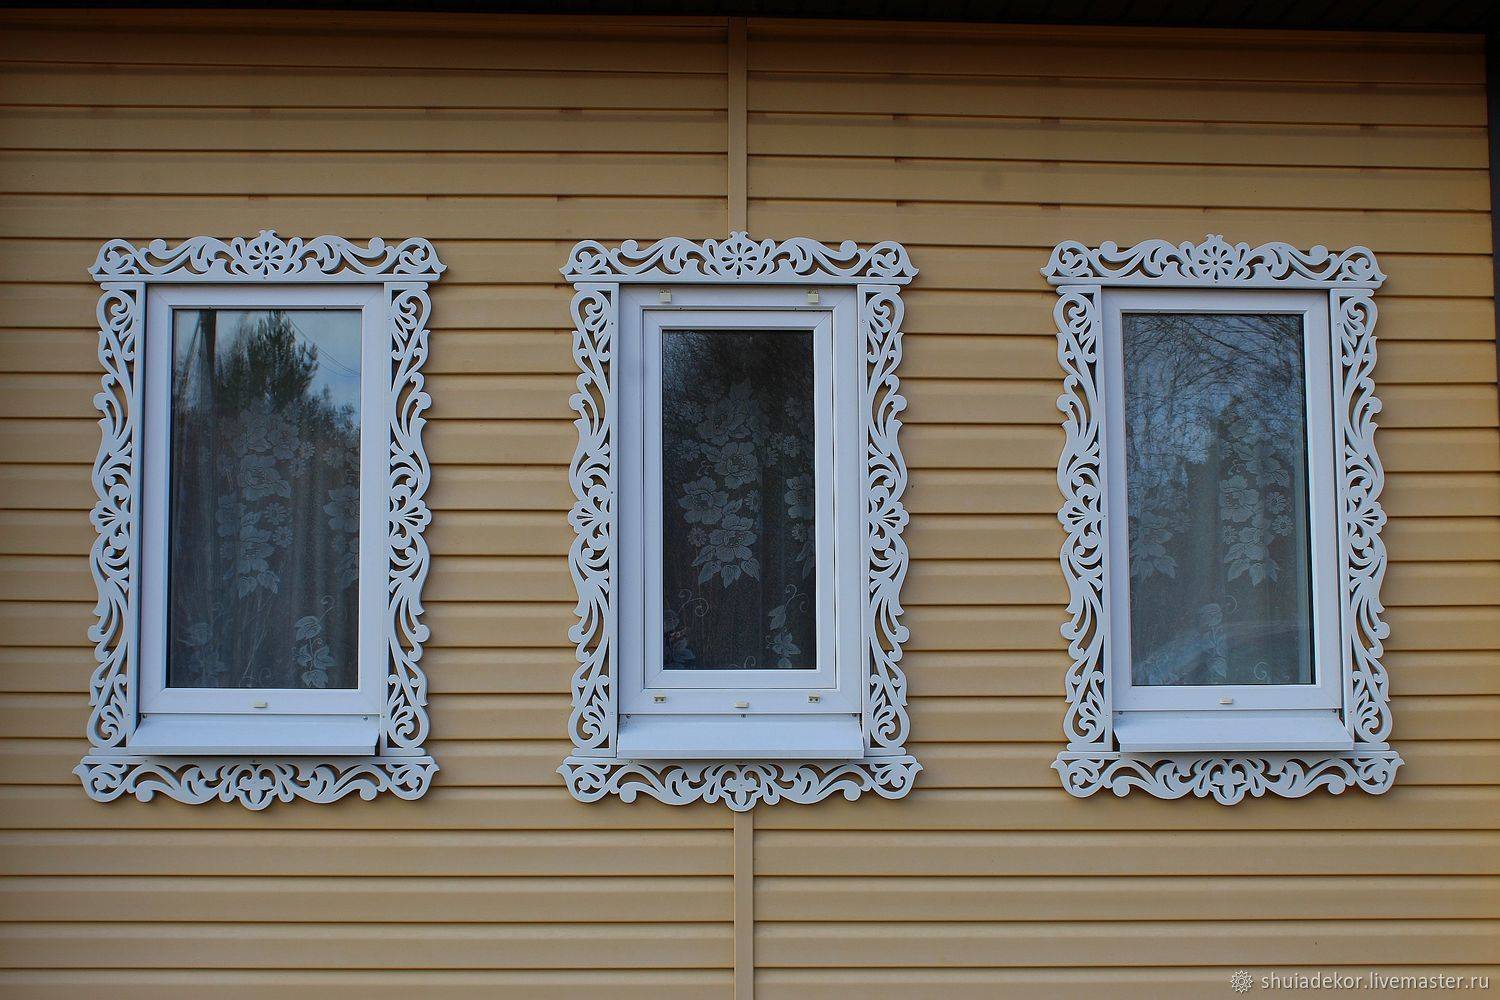 Наличники на окна в деревянном доме - обналичка снаружи, внутри, резные красивые, простые современные из дерева